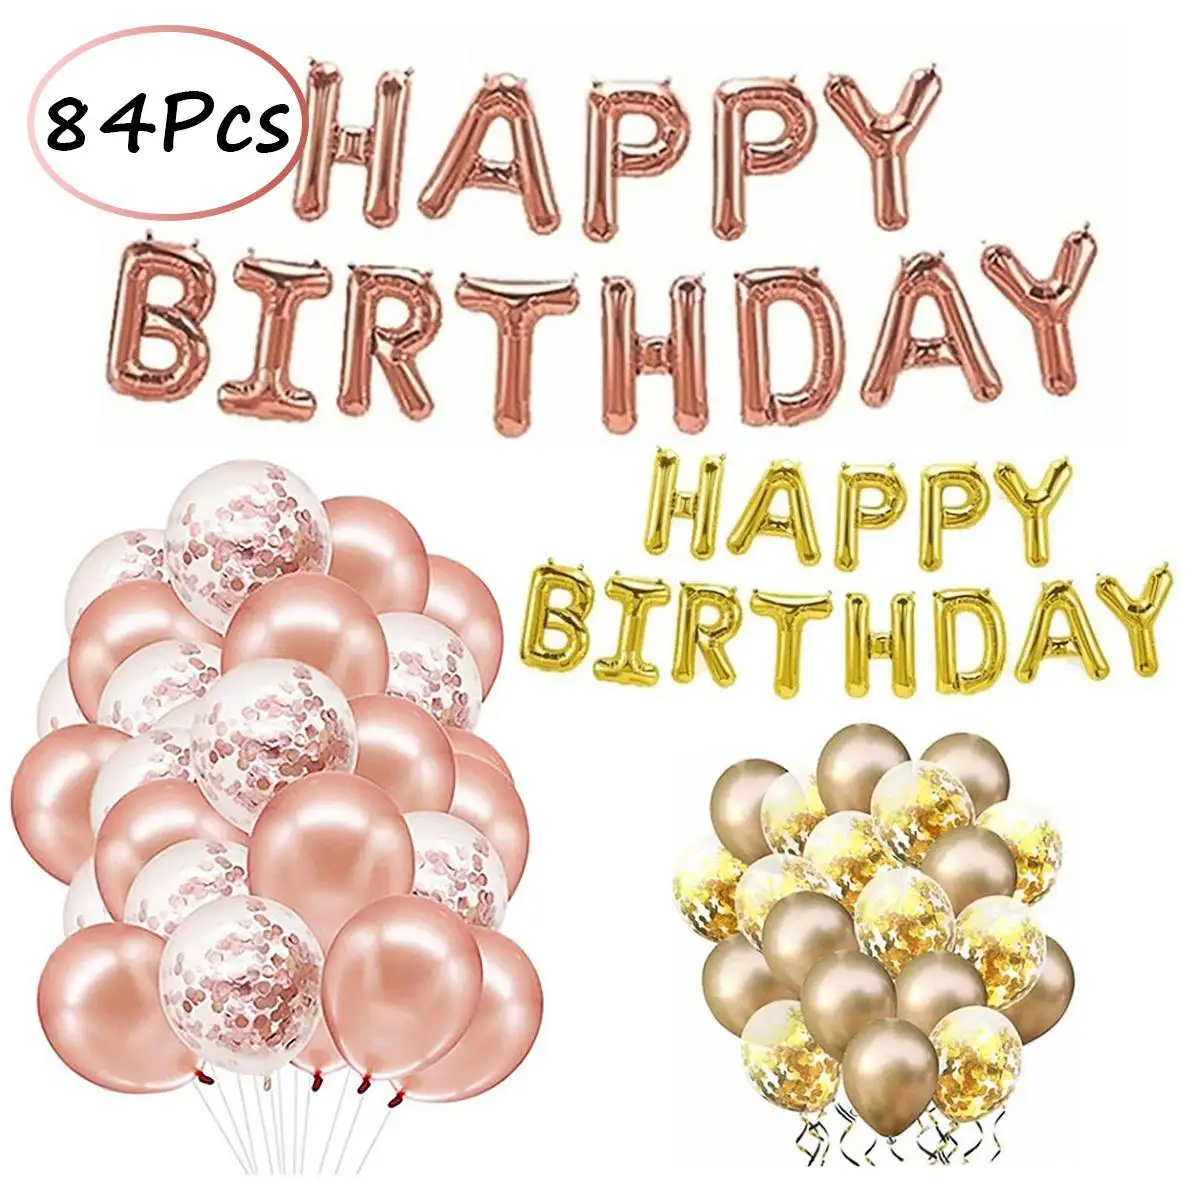 

64/84 шт. розовое золото одежда для свадьбы, дня рождения Воздушные шары фольгированные буквы «С Днем Рождения» шар Baby Shower Юбилей событие парт...